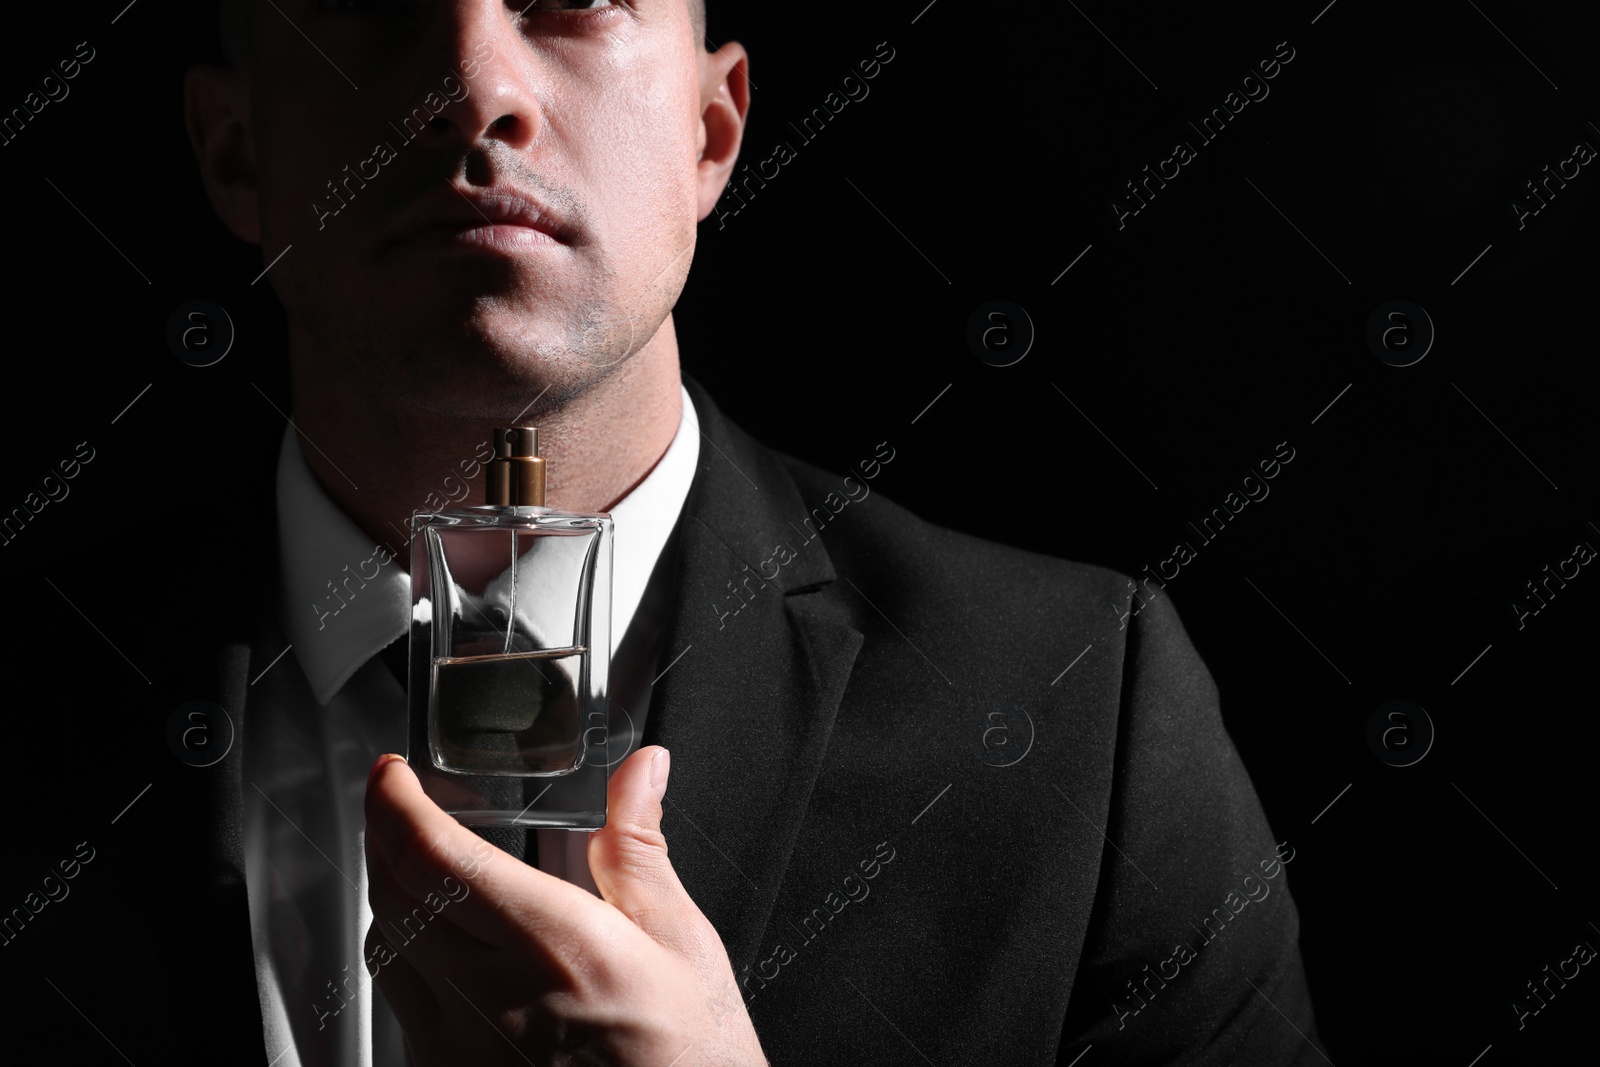 Photo of Man holding bottle of luxury perfume on black background, closeup